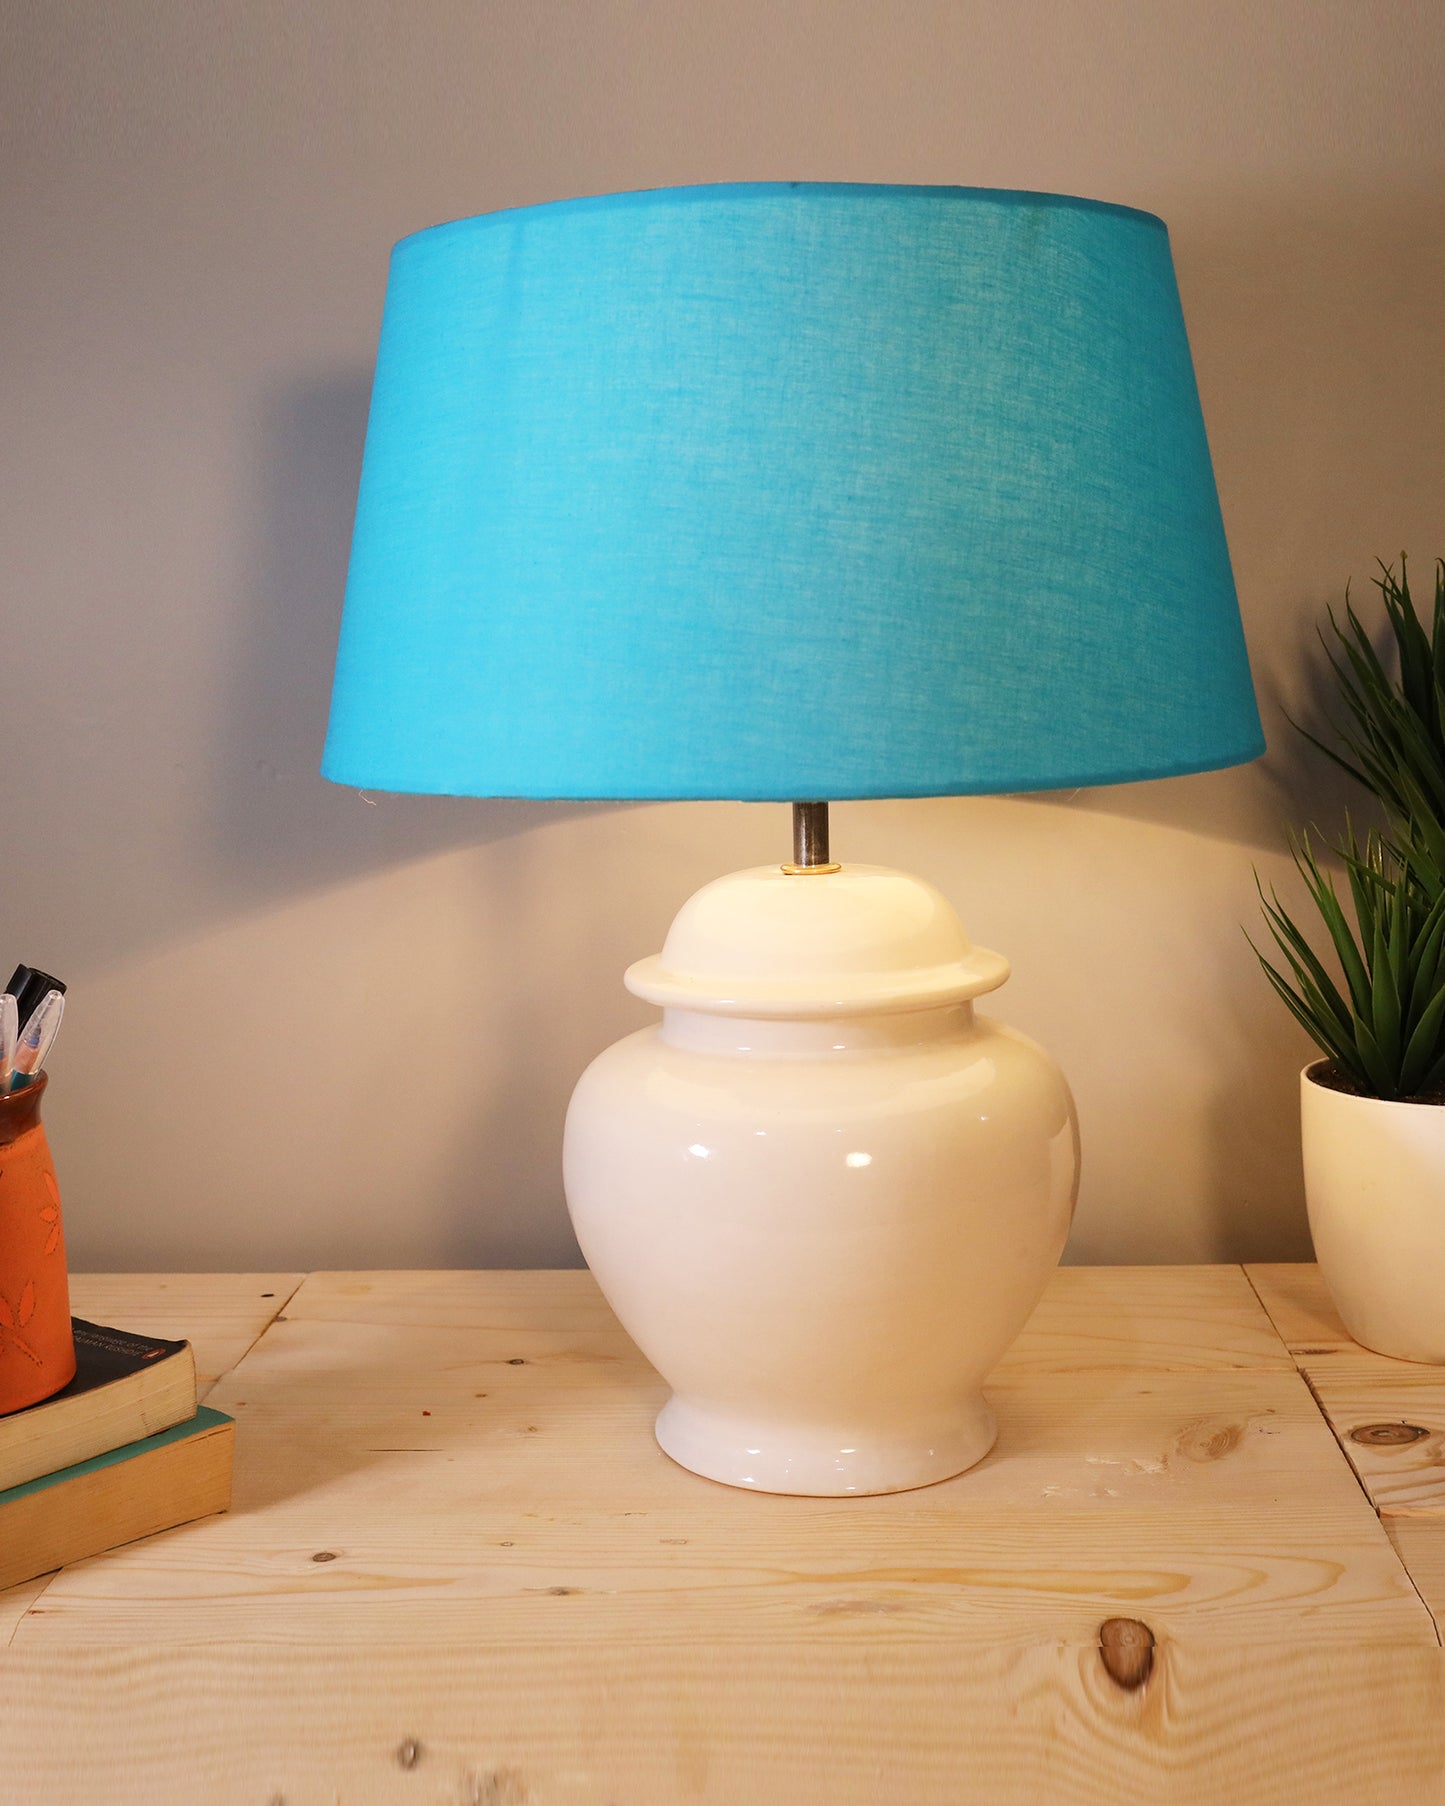 Ceramic Pot Shaped Base White Table Lamp with Turquoise Shade, LED Bulb